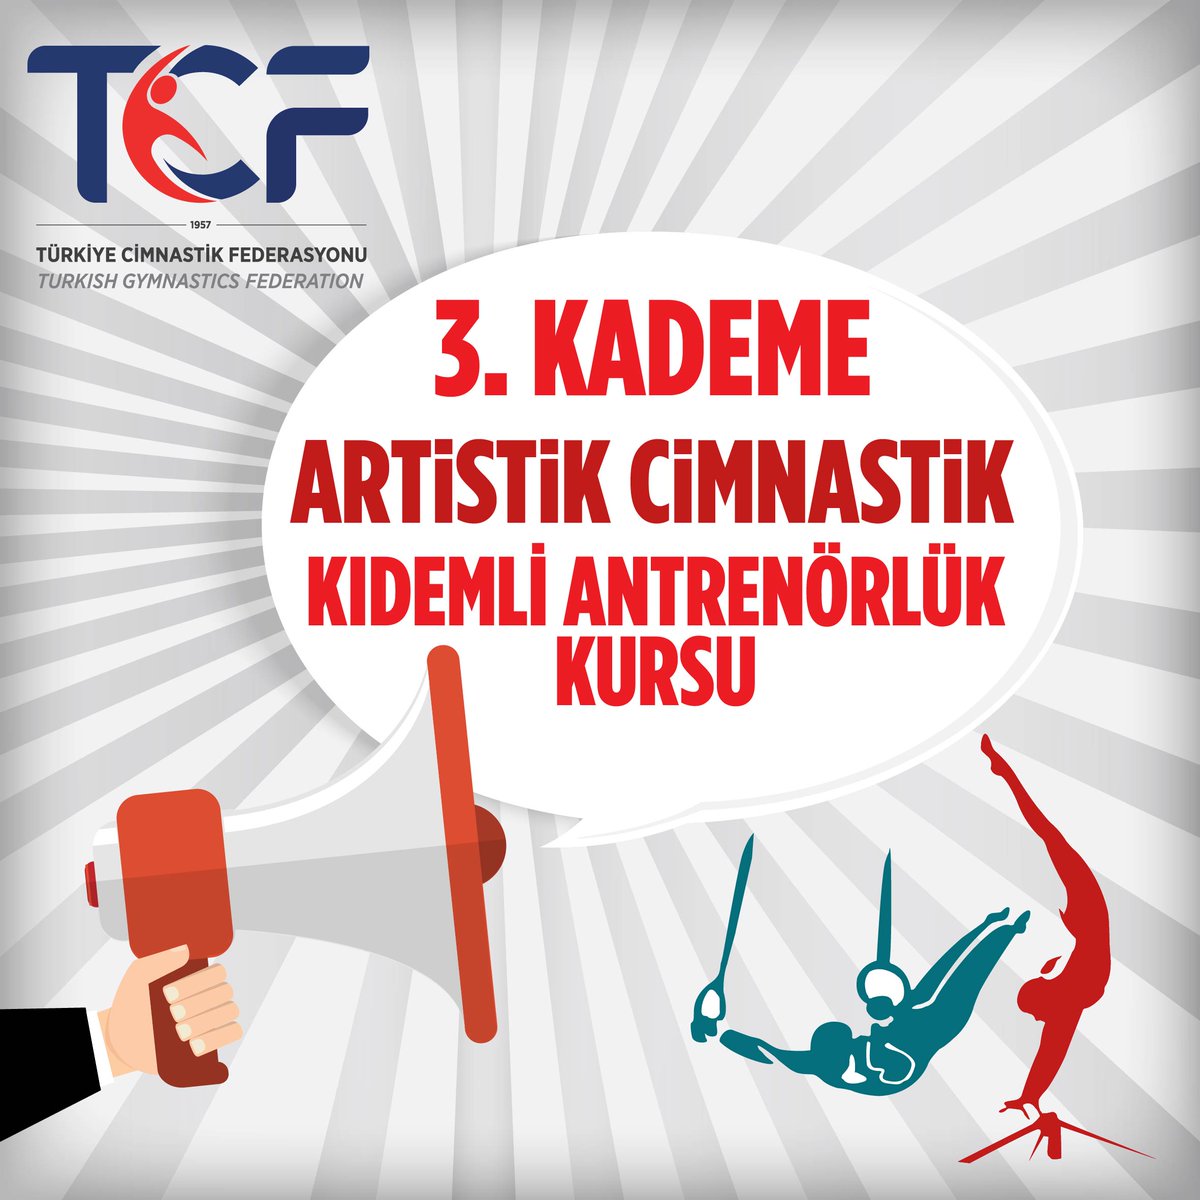 📢 3. Kademe Artistik Cimnastik Kıdemli Antrenörlük Kursu 🗓️ 19-24 Mayıs 2024 📍 İstanbul 🔔 Son başvuru 13 Mayıs 2024